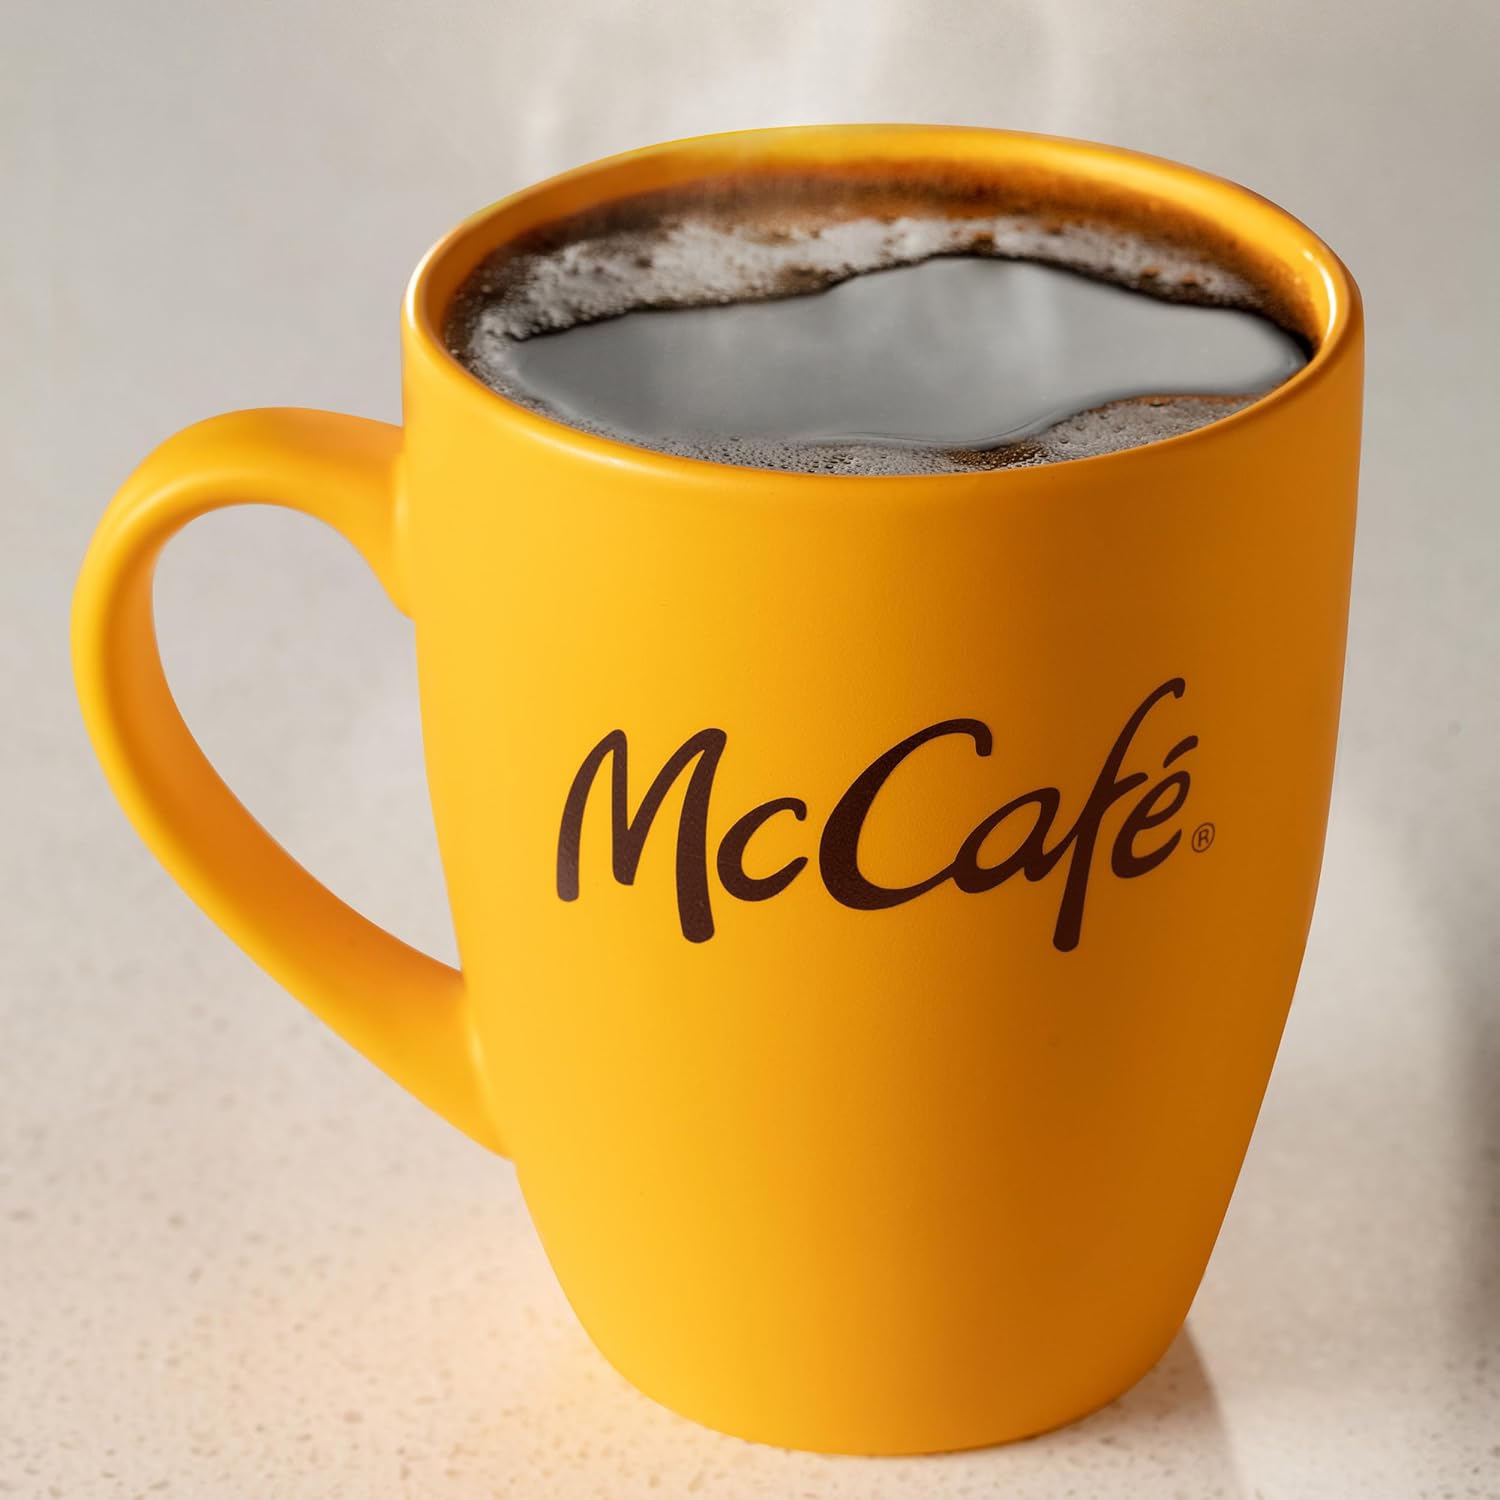 McCafe Breakfast Blend Coffee, Keurig Single Serve Keurig K-Cup Pods, Light Roast, 96 Count (4 Packs of 24) : Everything Else